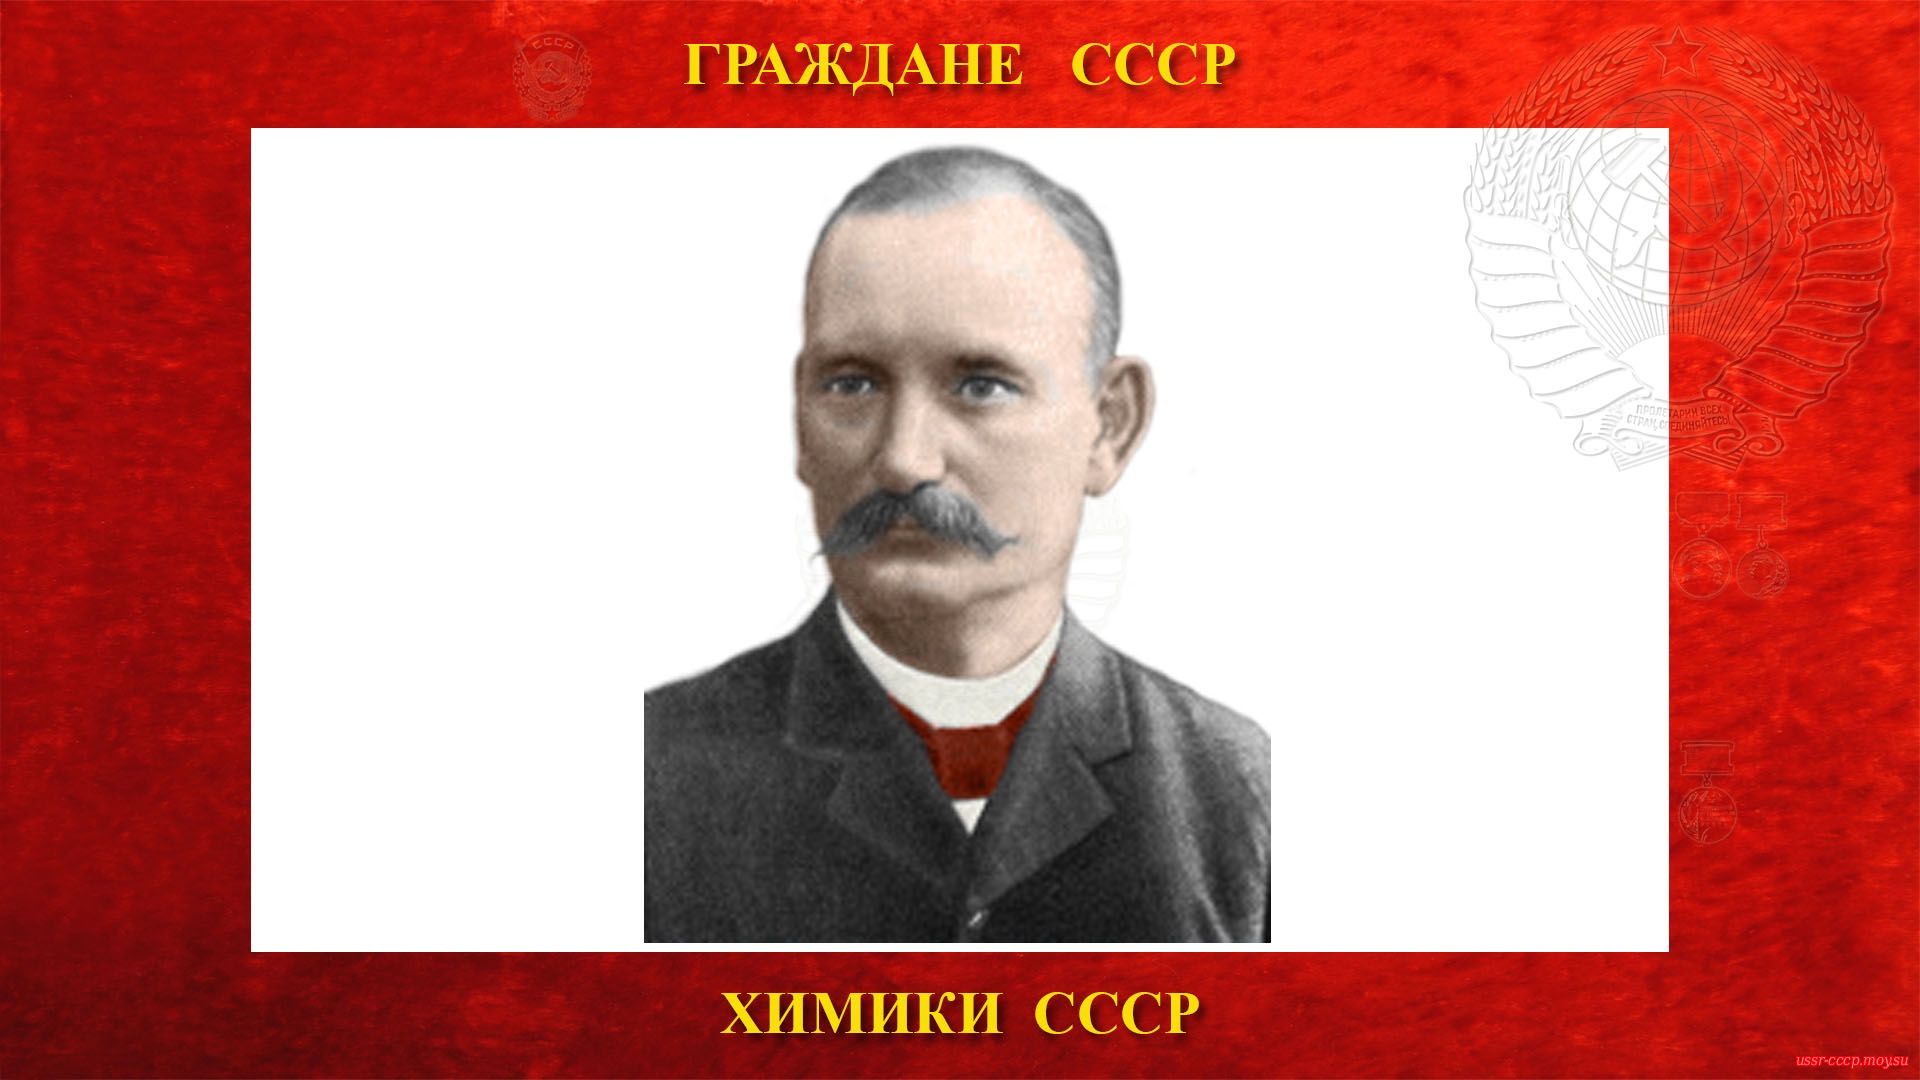 Курнаков Николай Семёнович — Русский физикохимик